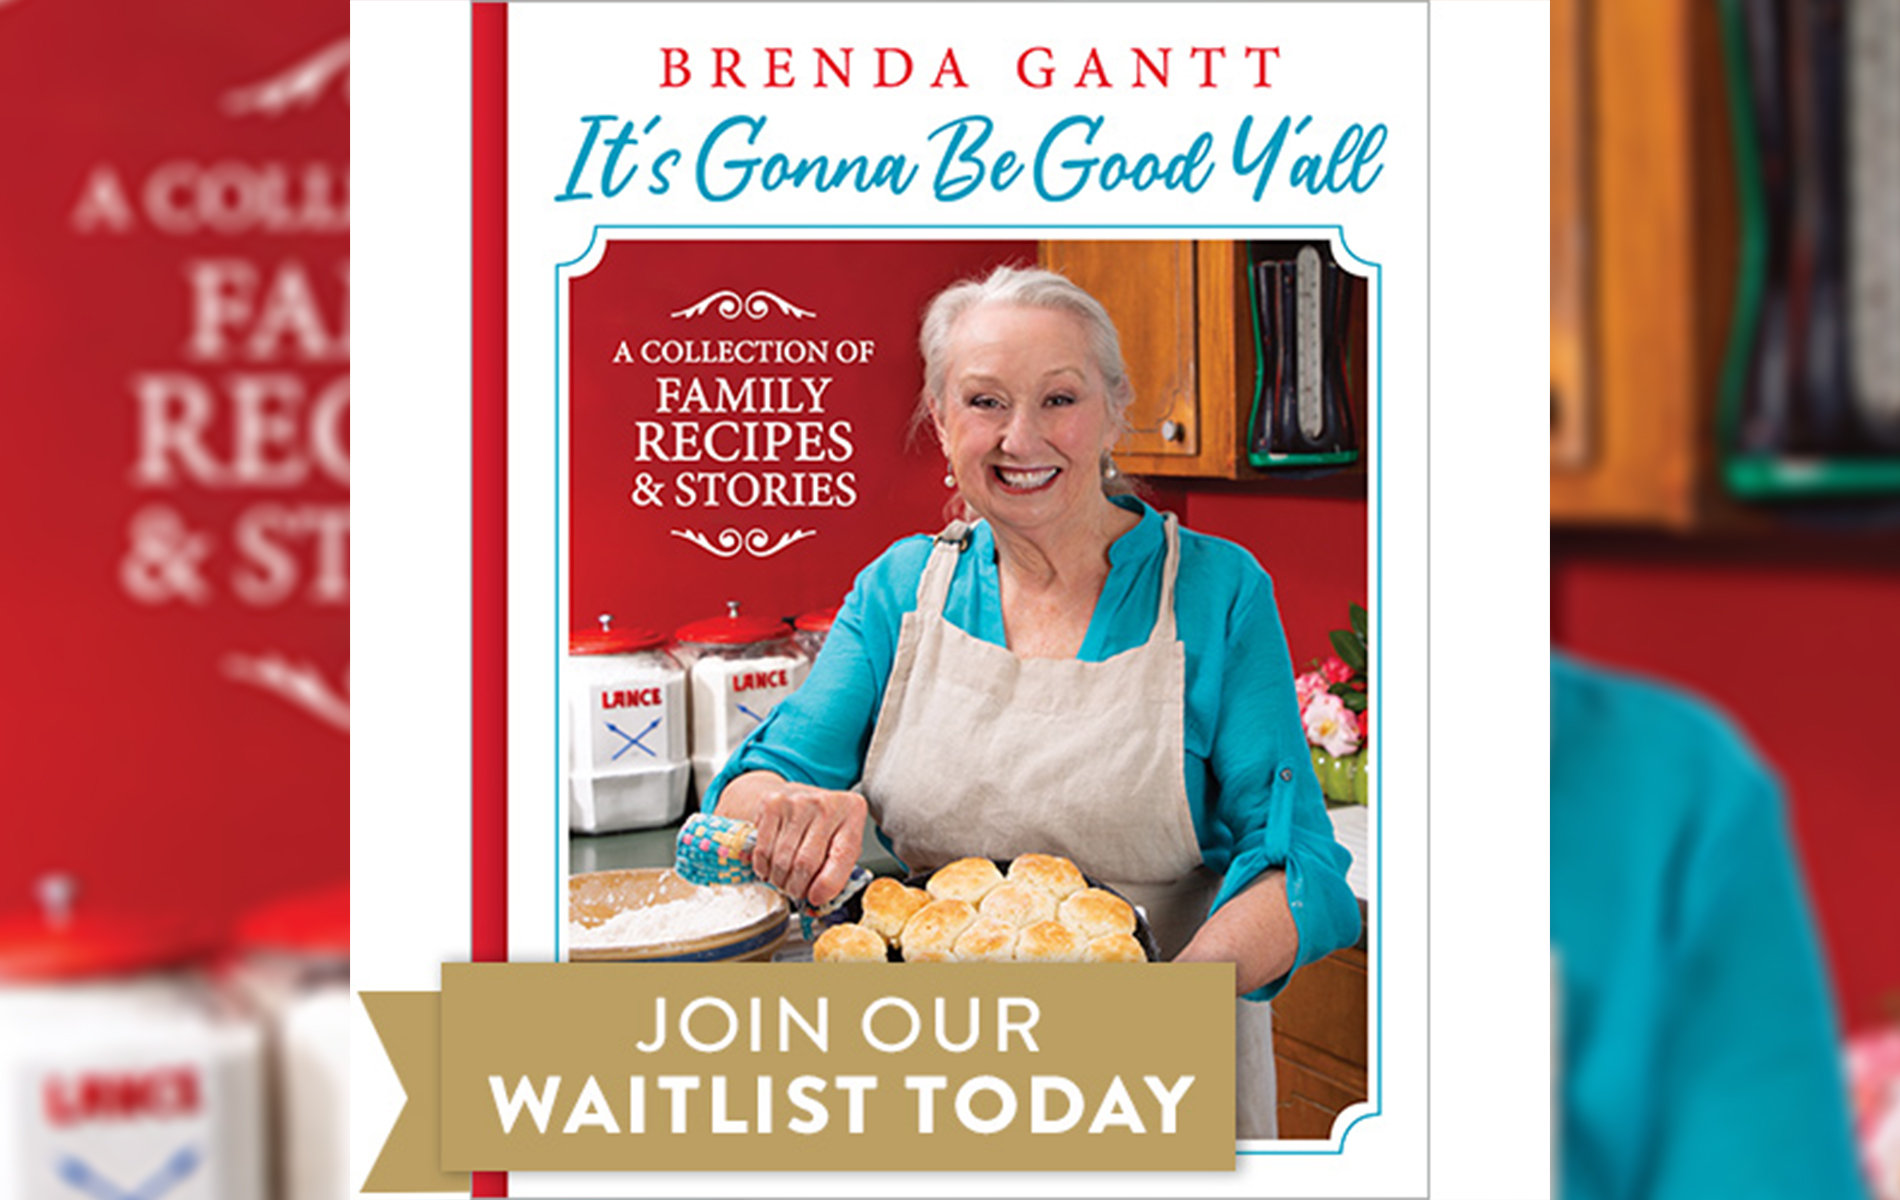 Facebook sensation Brenda Gantt debuts book full of recipes, wisdom